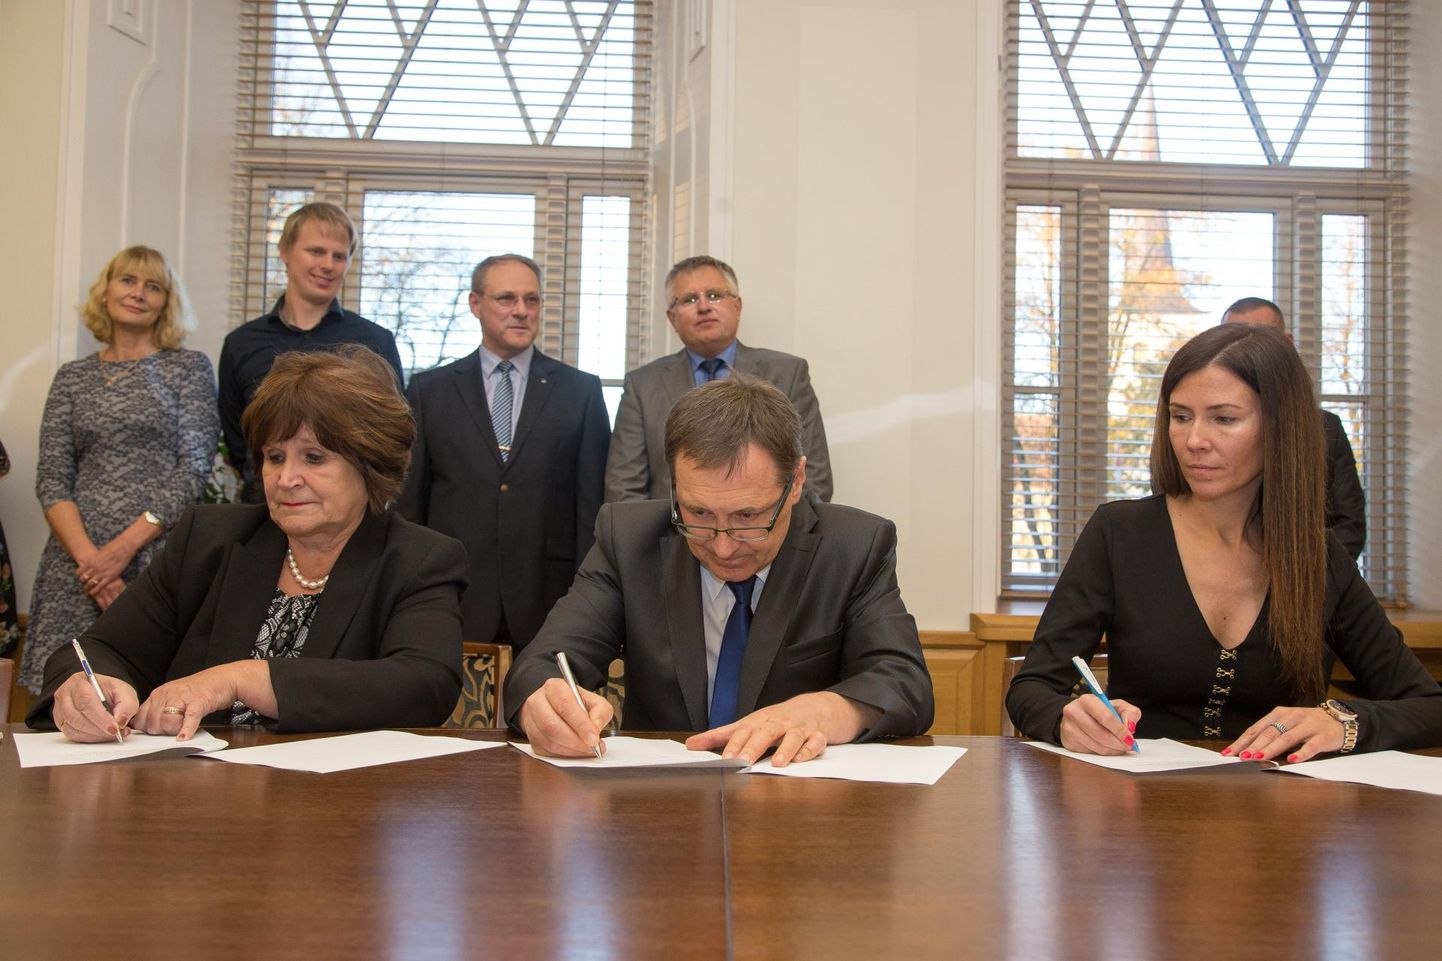 2017. aasta 23. oktoobril allkirjastasid Kersti Sarapuu (vasakult), Mihhail Feštšin ja Siret Pihelgas Paide linna juhtimiseks koaltsioonilepingu, mis muutus ajalooks 17. septembril, kui partnerid vahetasid Keskerakonna Reformierakonna vastu.